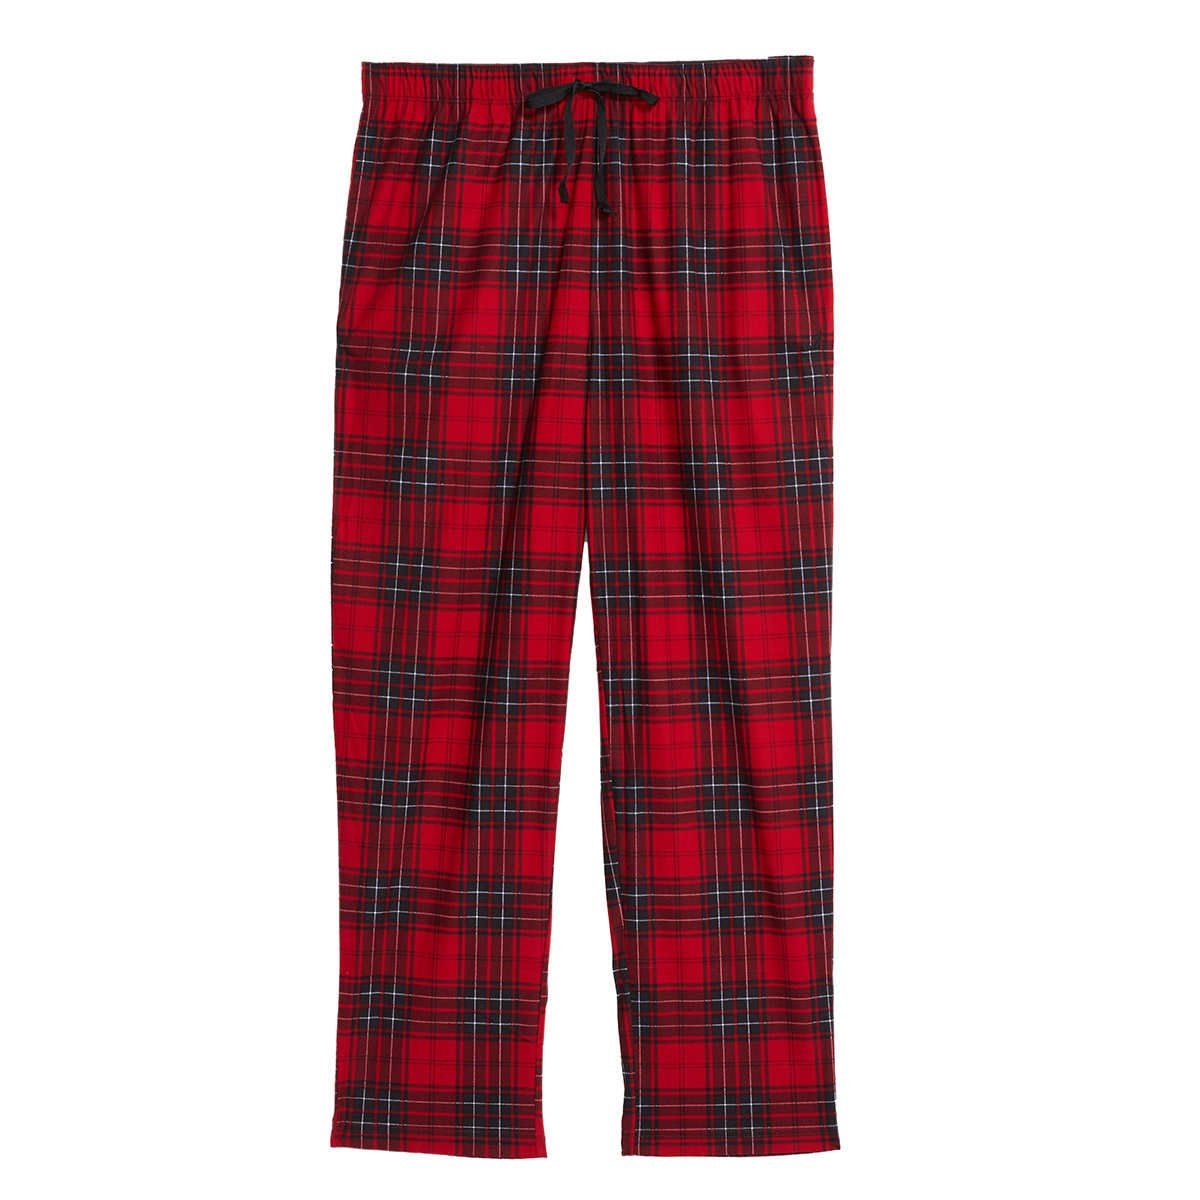 Nautica Men's Soft Fleece Pajama Pants Set - Cozy Comfort in 2-Pack